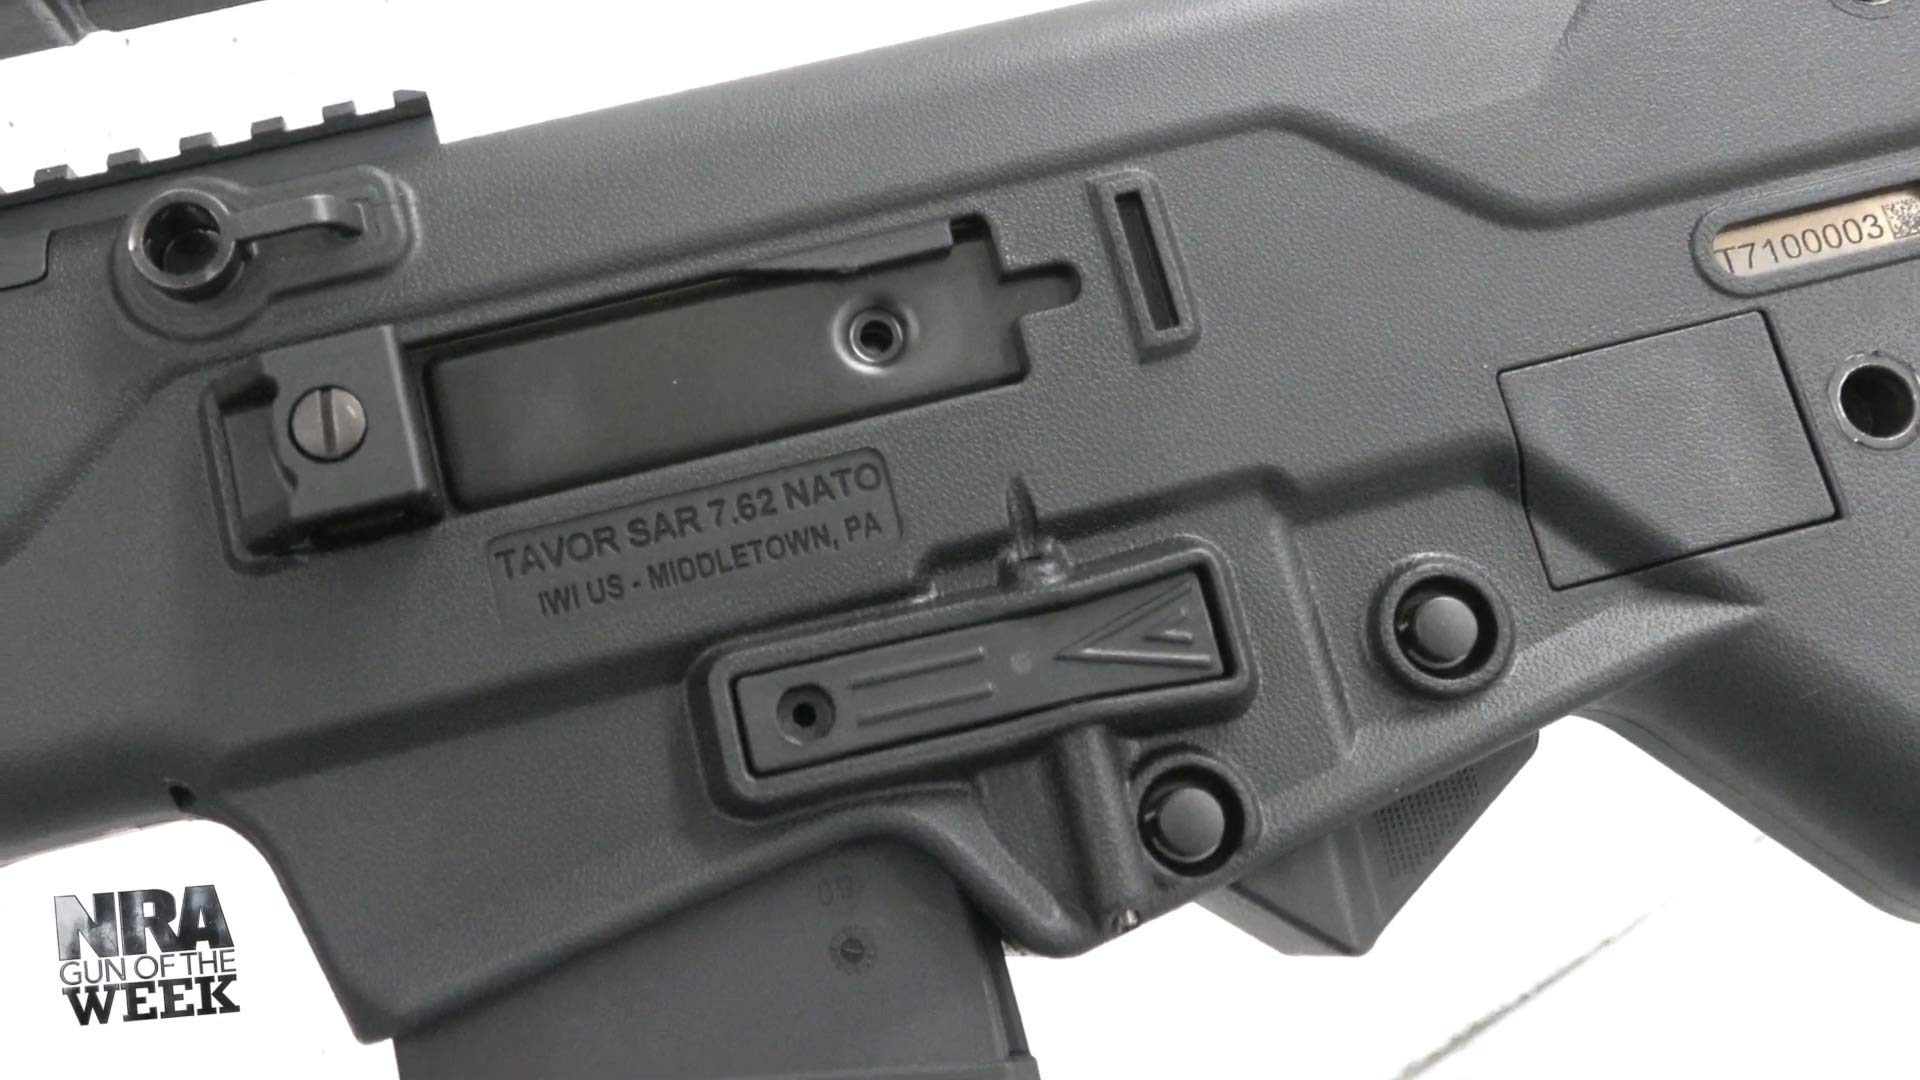 IWI Tavor 7 bullpup rifle receiver closeup